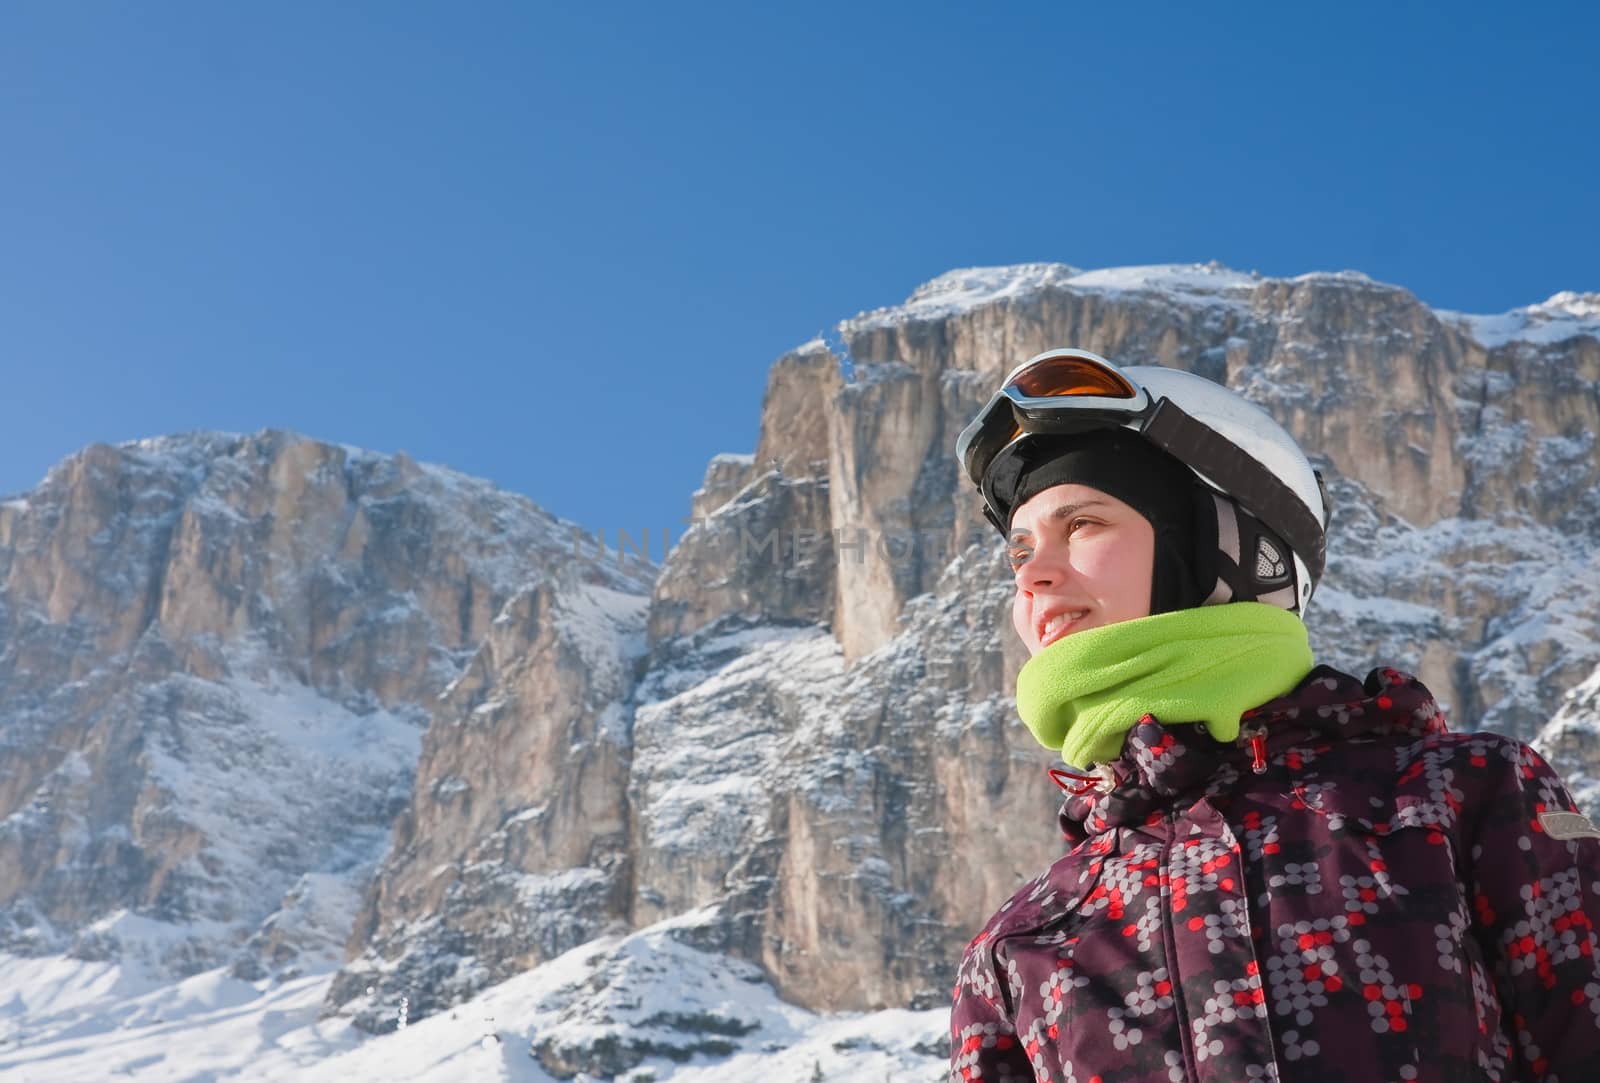 Portrait alpine skier. Ski resort of Selva di Val Gardena, Italy